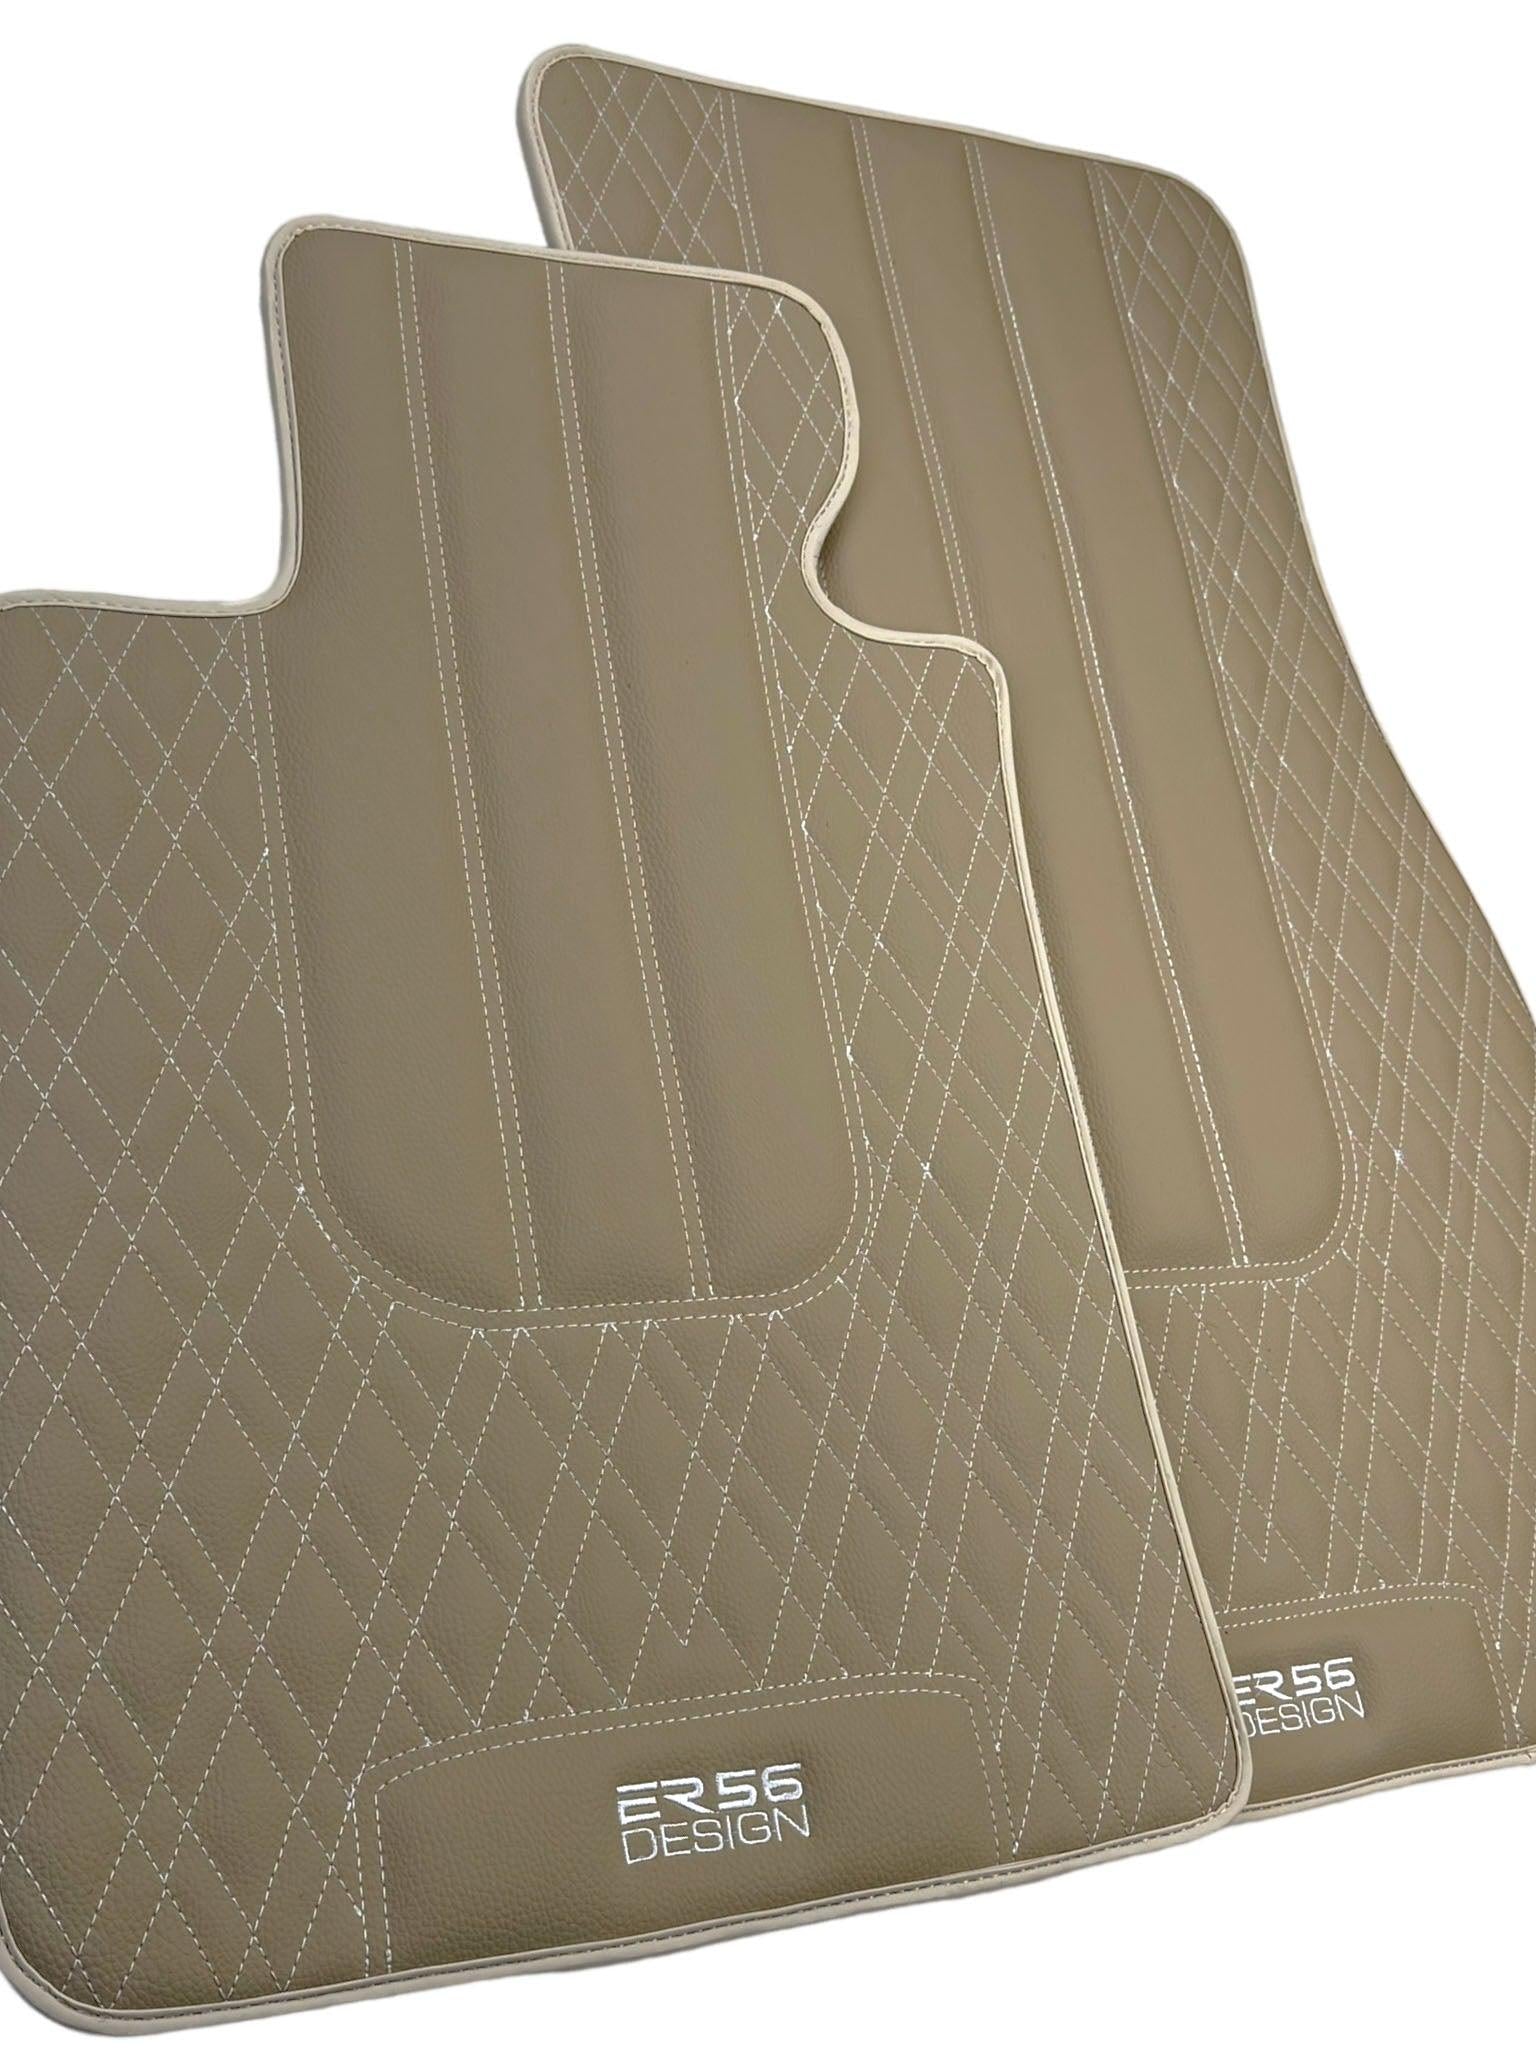 Beige Leather Floor Floor Mats For BMW X3 Series G01